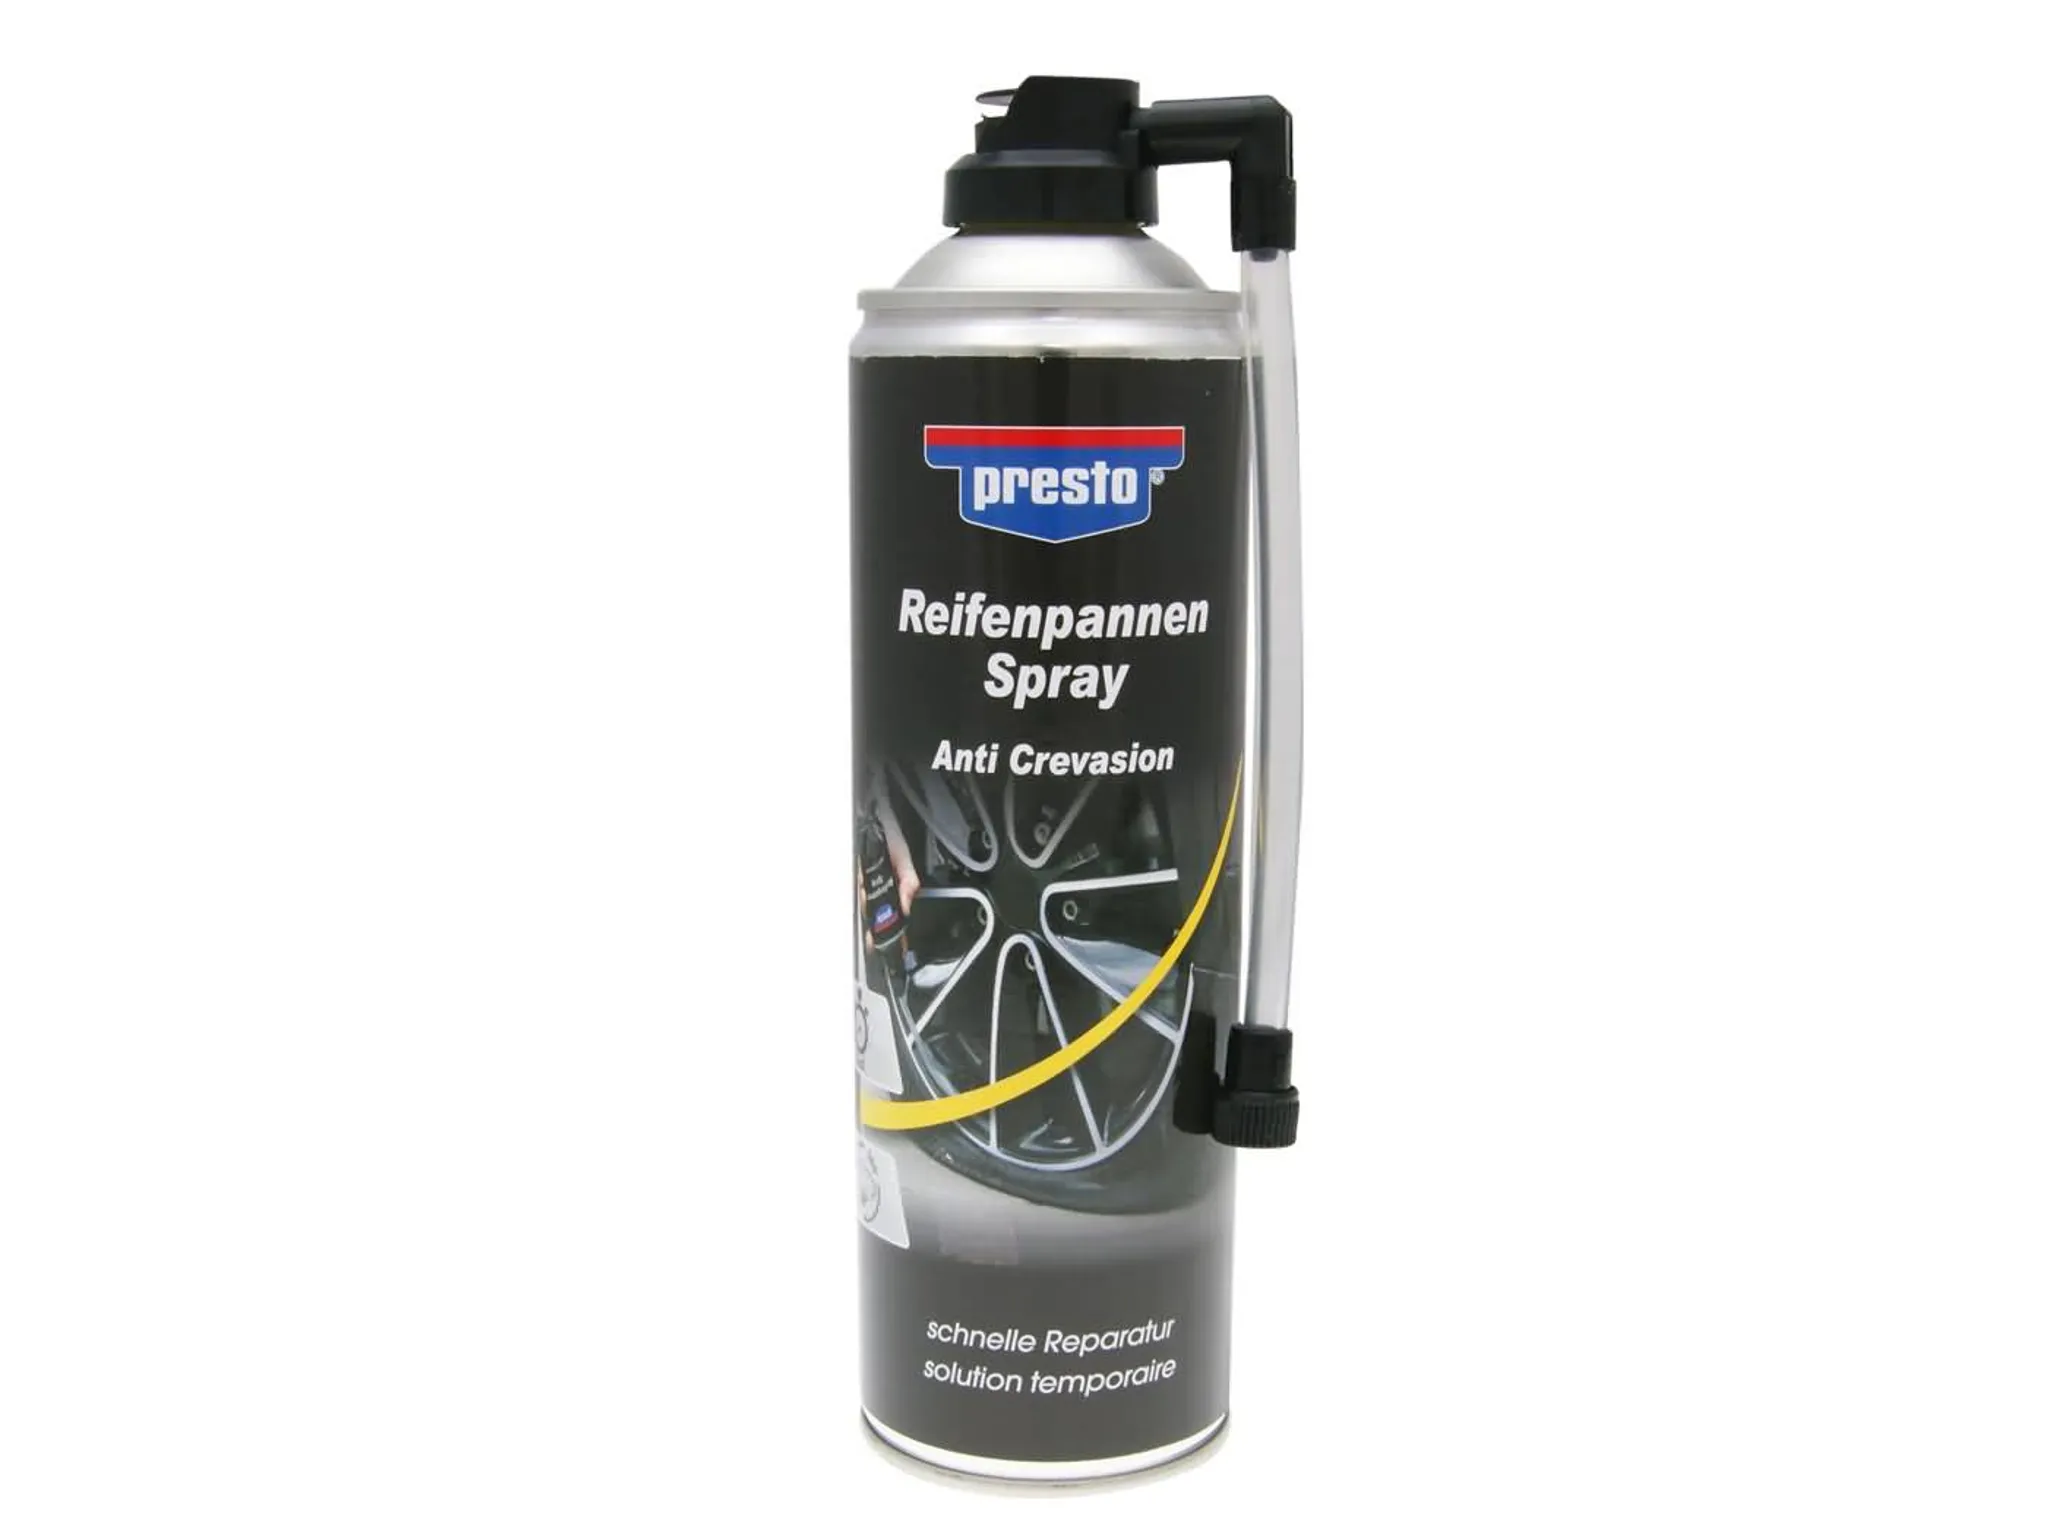 PETEC Reifendichtmittel Reifenpannenspray, für Auto, Pannenhilfe, 400ml –  Böttcher AG